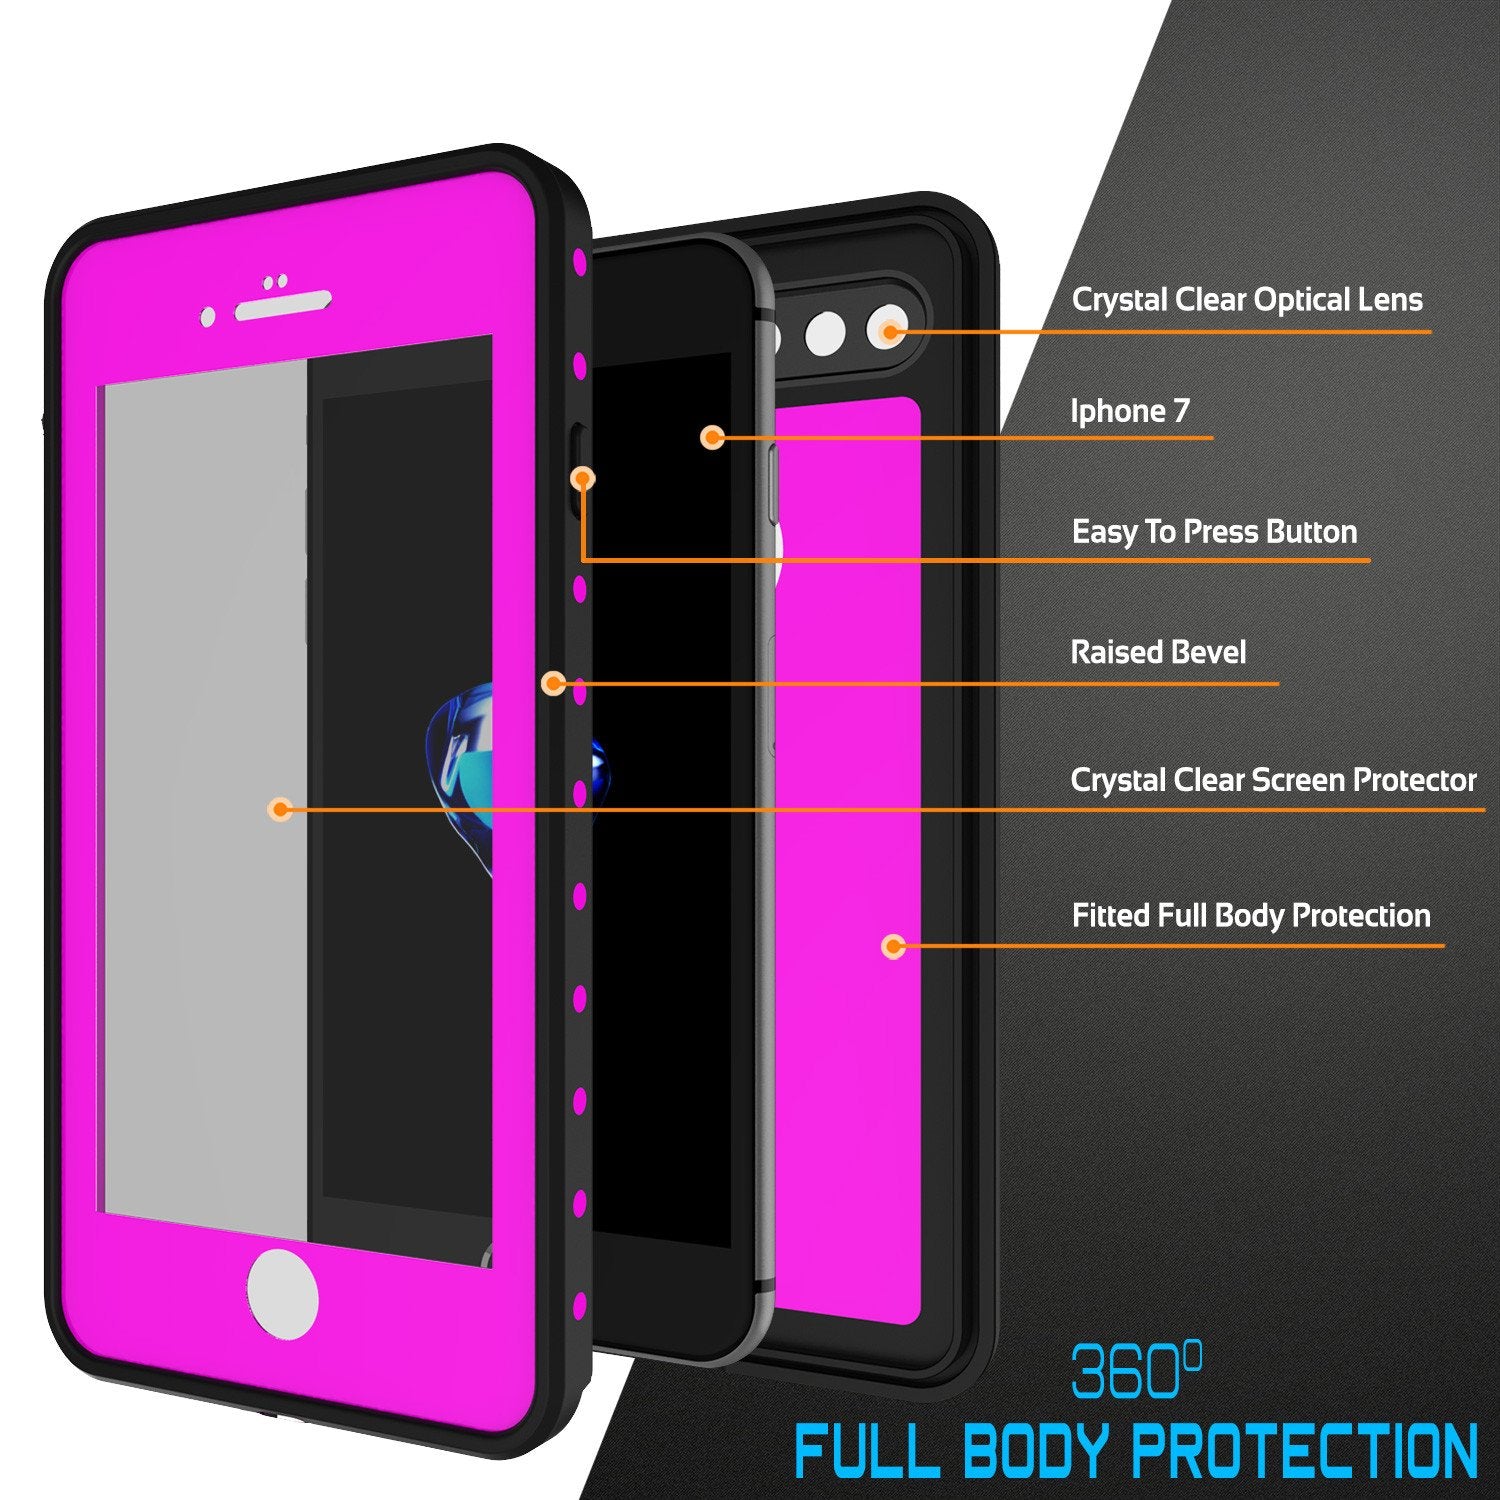 iPhone 7+ Plus Waterproof IP68 Case, Punkcase [Pink] [StudStar Series] [Slim Fit] [Dirtproof]